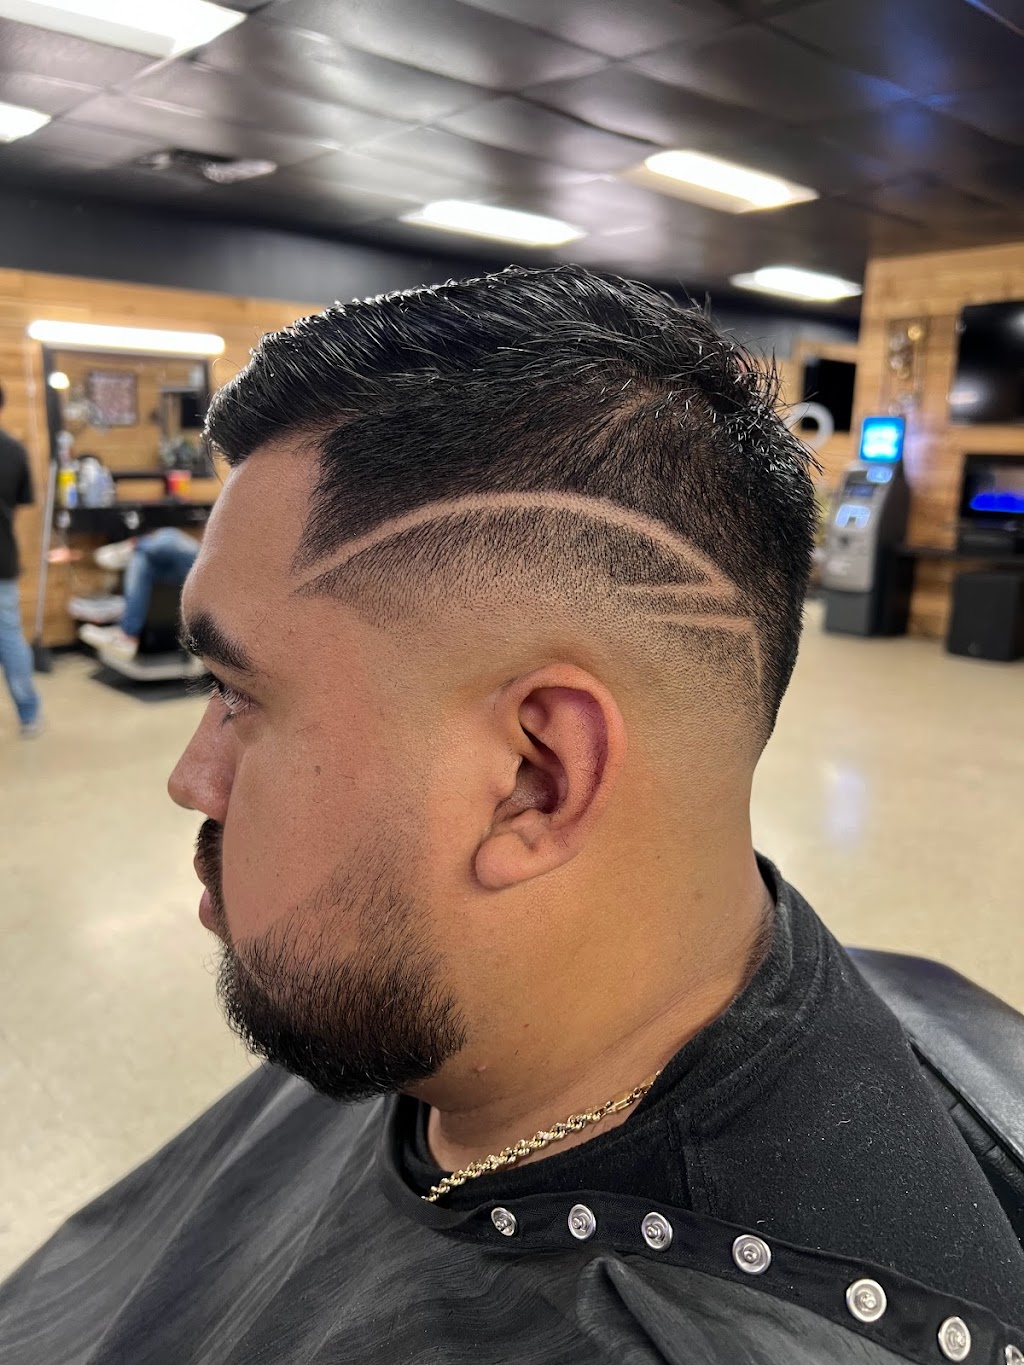 El Barber Shop | 221 S Belt Line Rd, Irving, TX 75060, USA | Phone: (469) 223-7226